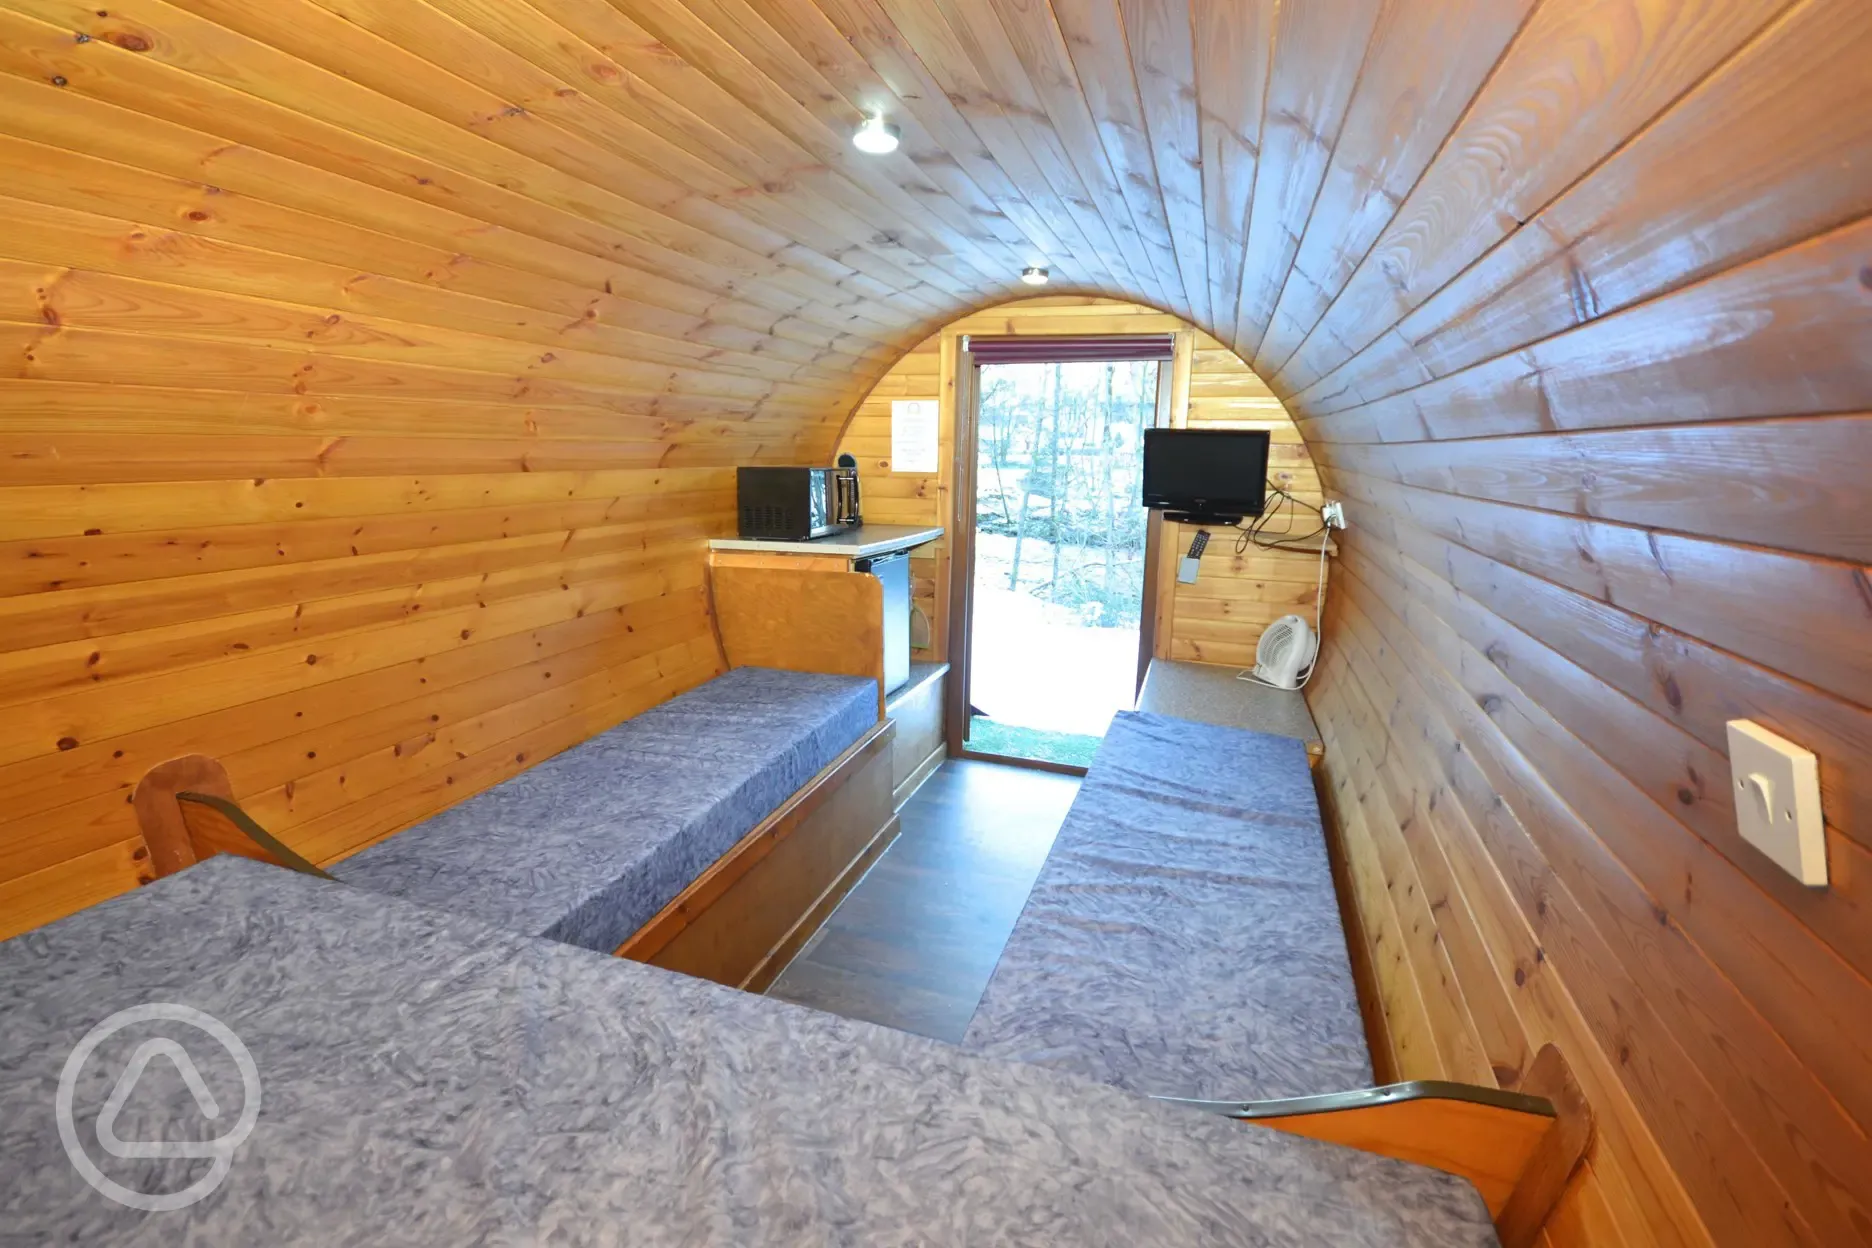 Micro lodge interior